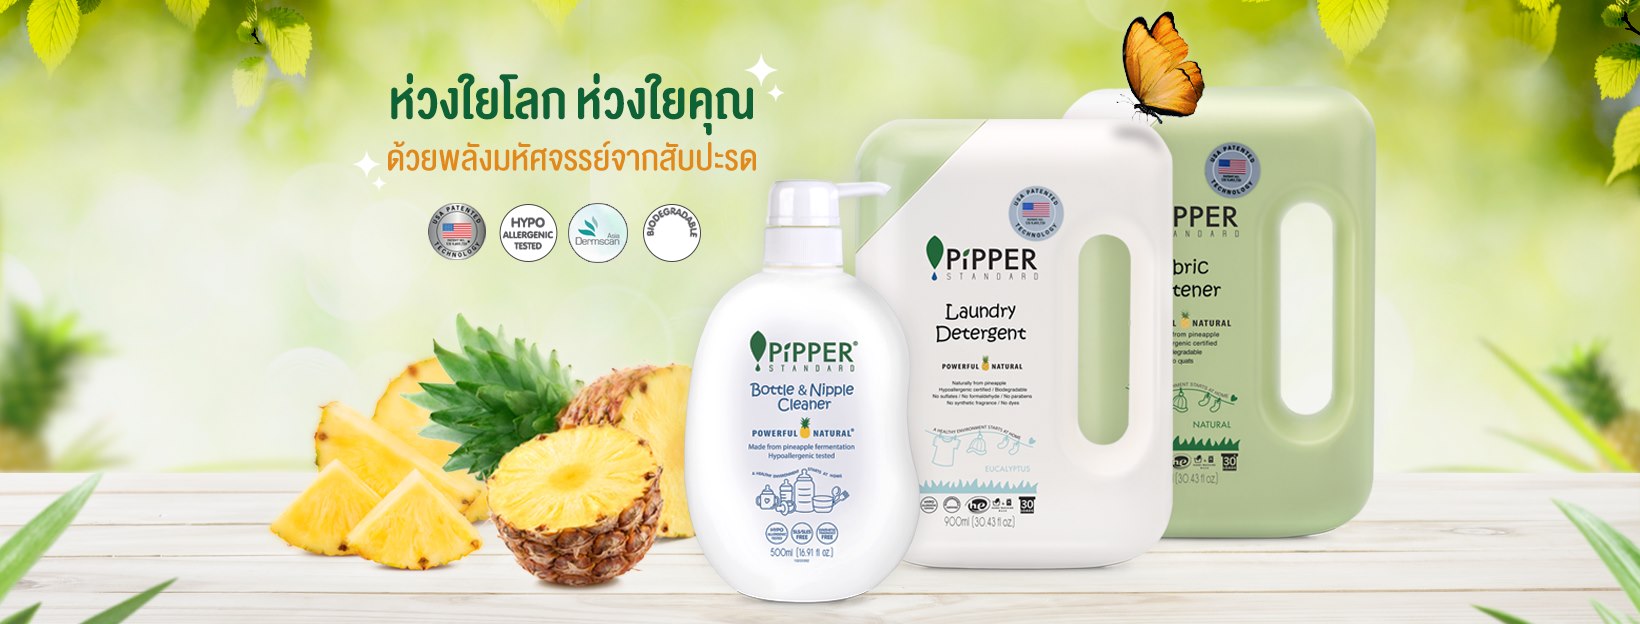 Pipper Standard ผลิตภัณฑ์ทำความสะอาดภายในบ้านปลอดสารเคมี